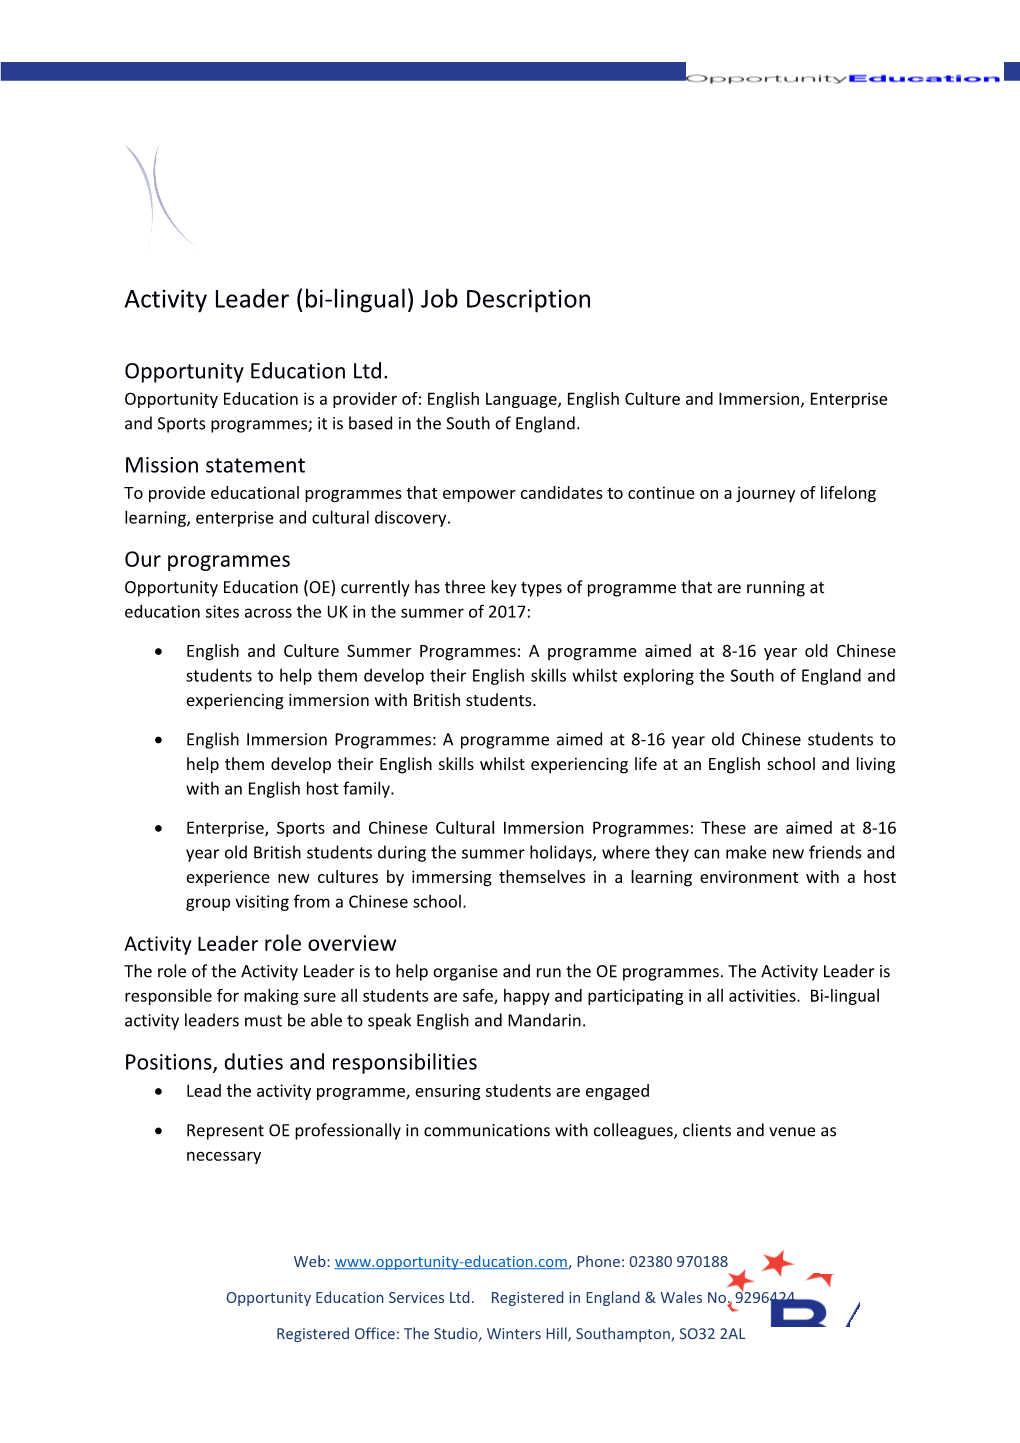 Activity Leader (Bi-Lingual) Job Description